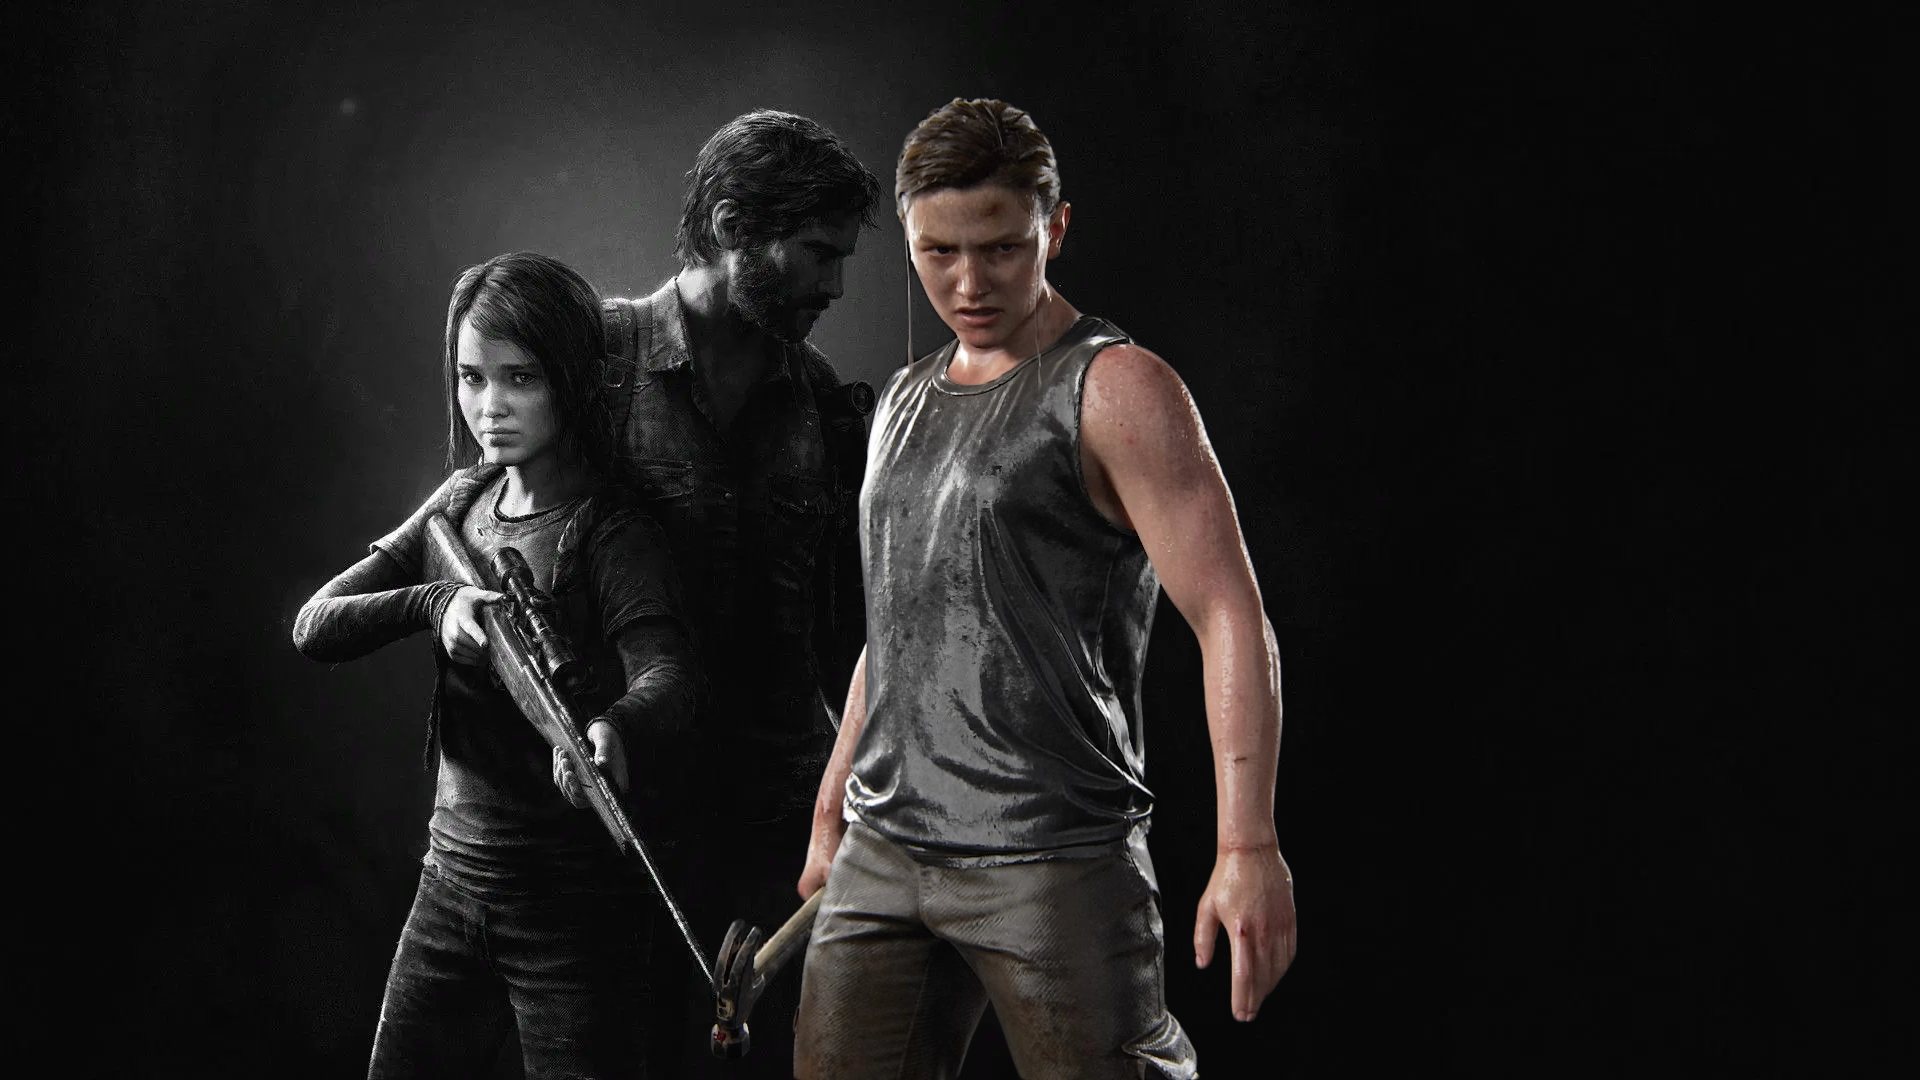 Lista de personagens de The Last of Us – Wikipédia, a enciclopédia livre